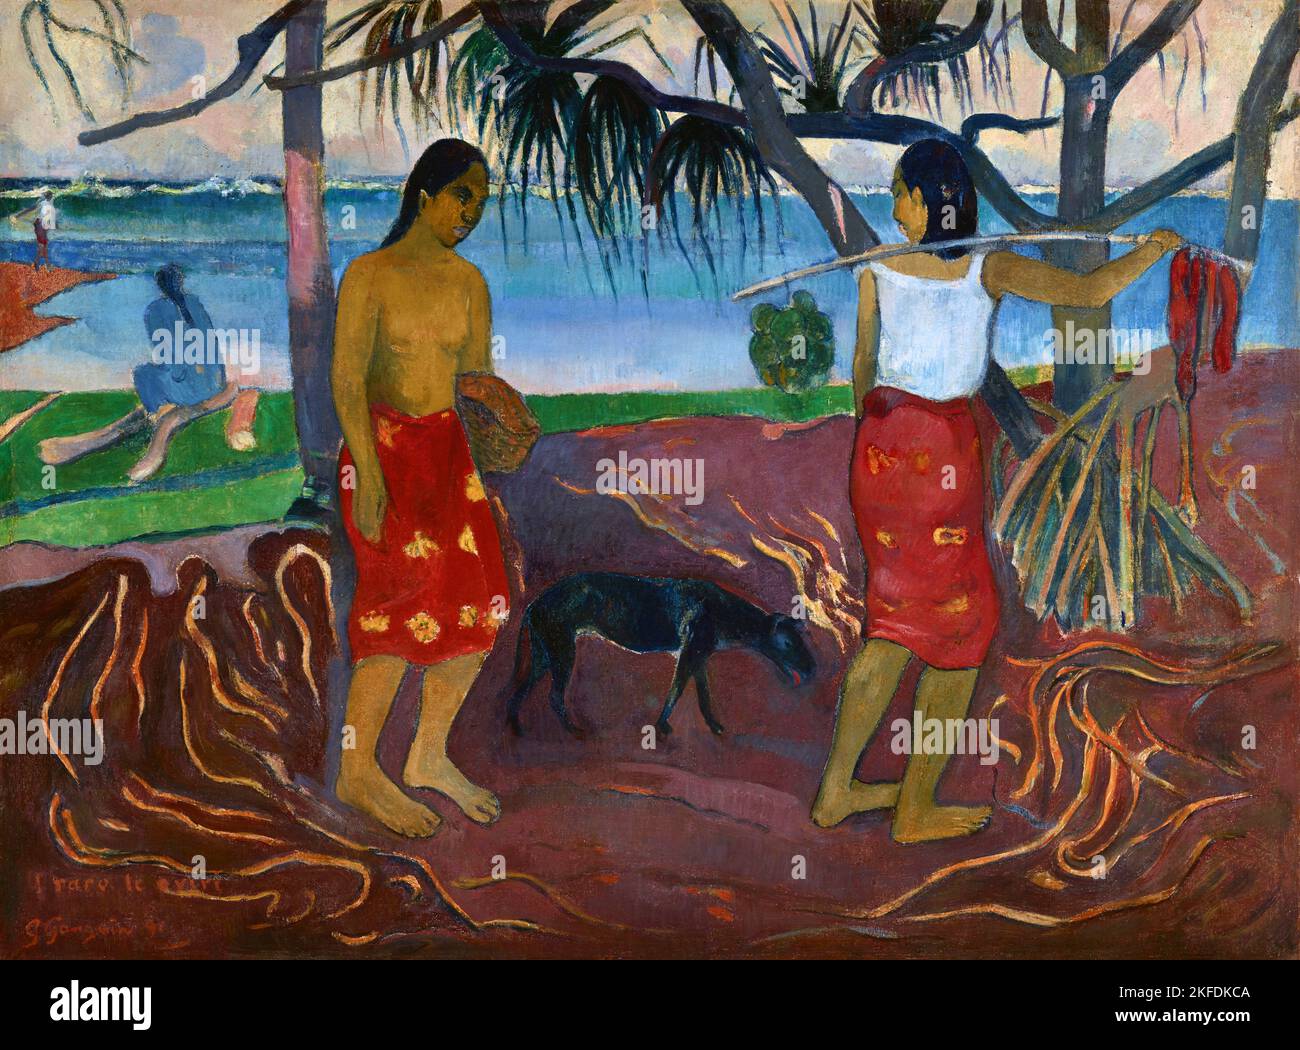 Tahiti: 'I Raro te Oviri' (sous le Pandanus). Peinture à l'huile sur toile par Paul Gauguin (7 juin 1848 - 8 mai 1903), 1891. Paul Gauguin est né à Paris en 1848 et a passé une partie de son enfance au Pérou. Il a travaillé comme courtier en Bourse avec peu de succès et a souffert de crises de dépression grave. Il a également peint. En 1891, Gauguin, frustré par le manque de reconnaissance à la maison et financièrement indigente, navigue vers les tropiques pour échapper à la civilisation européenne et "tout ce qui est artificiel et conventionnel". Son temps il y avait le sujet de beaucoup d'intérêt à l'époque et dans les temps modernes. Banque D'Images